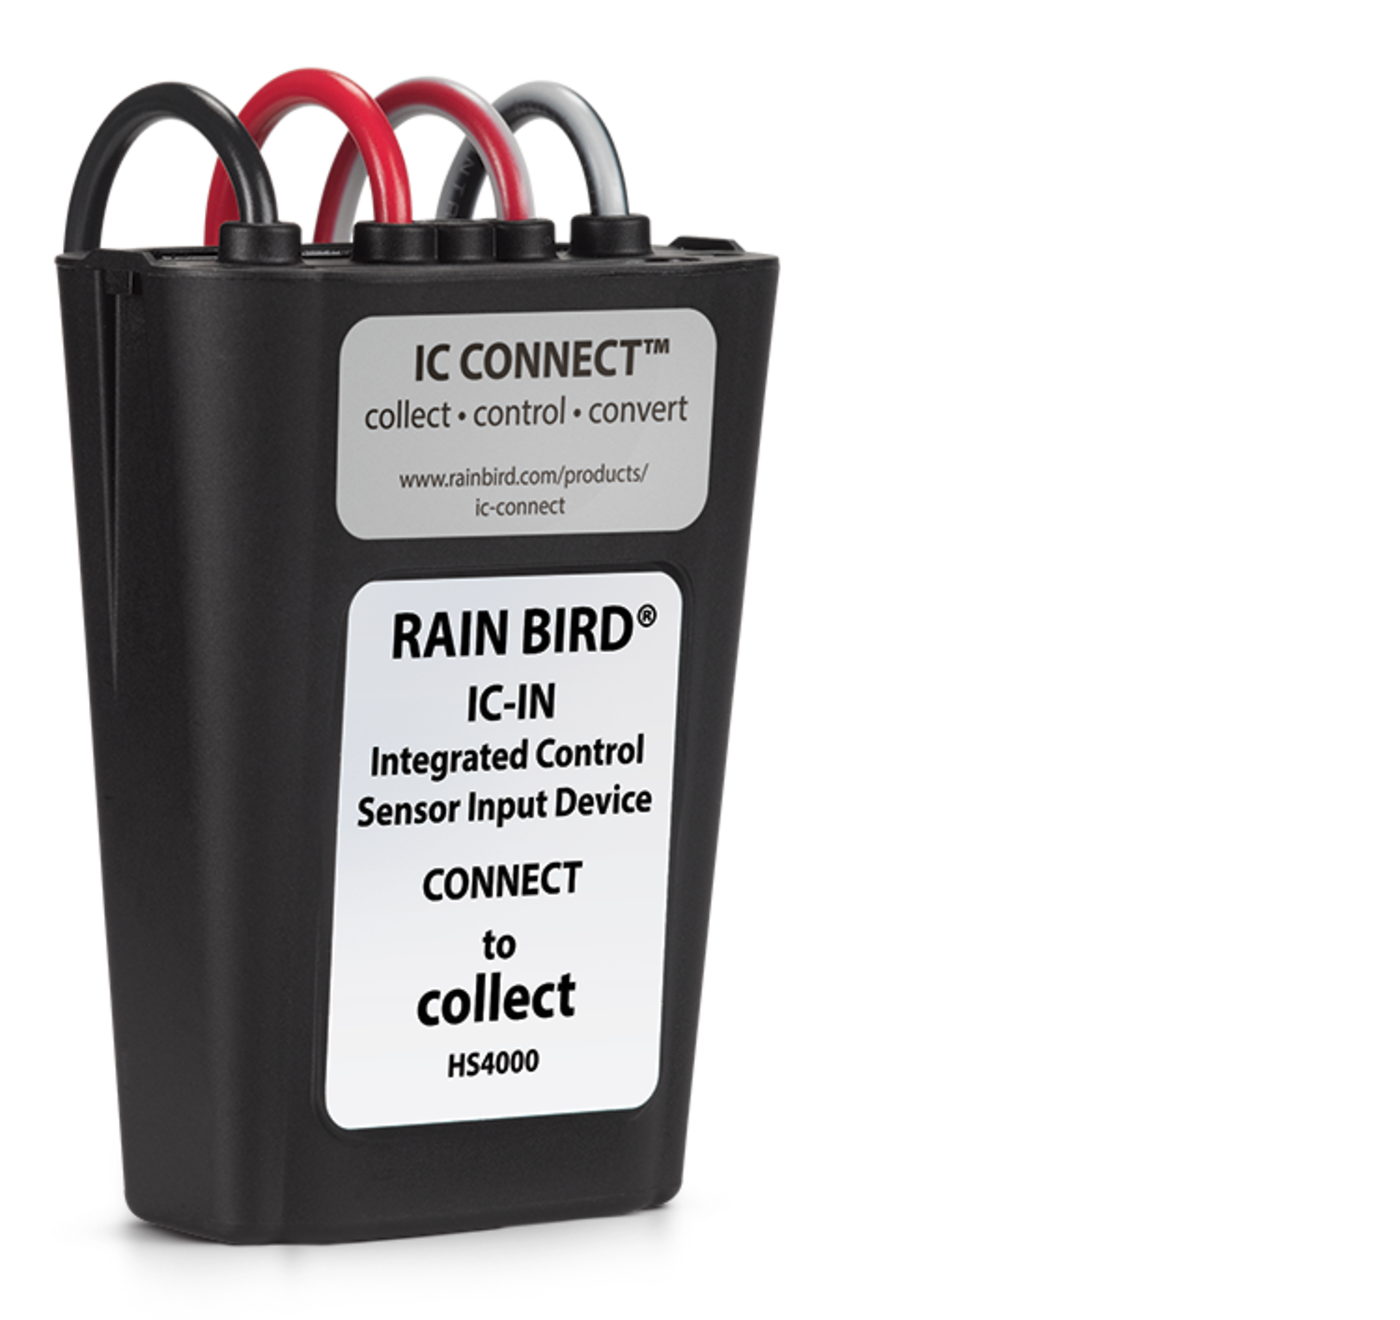 Sistema de Controle Integrado ICI para Golfe - RAIN BIRD